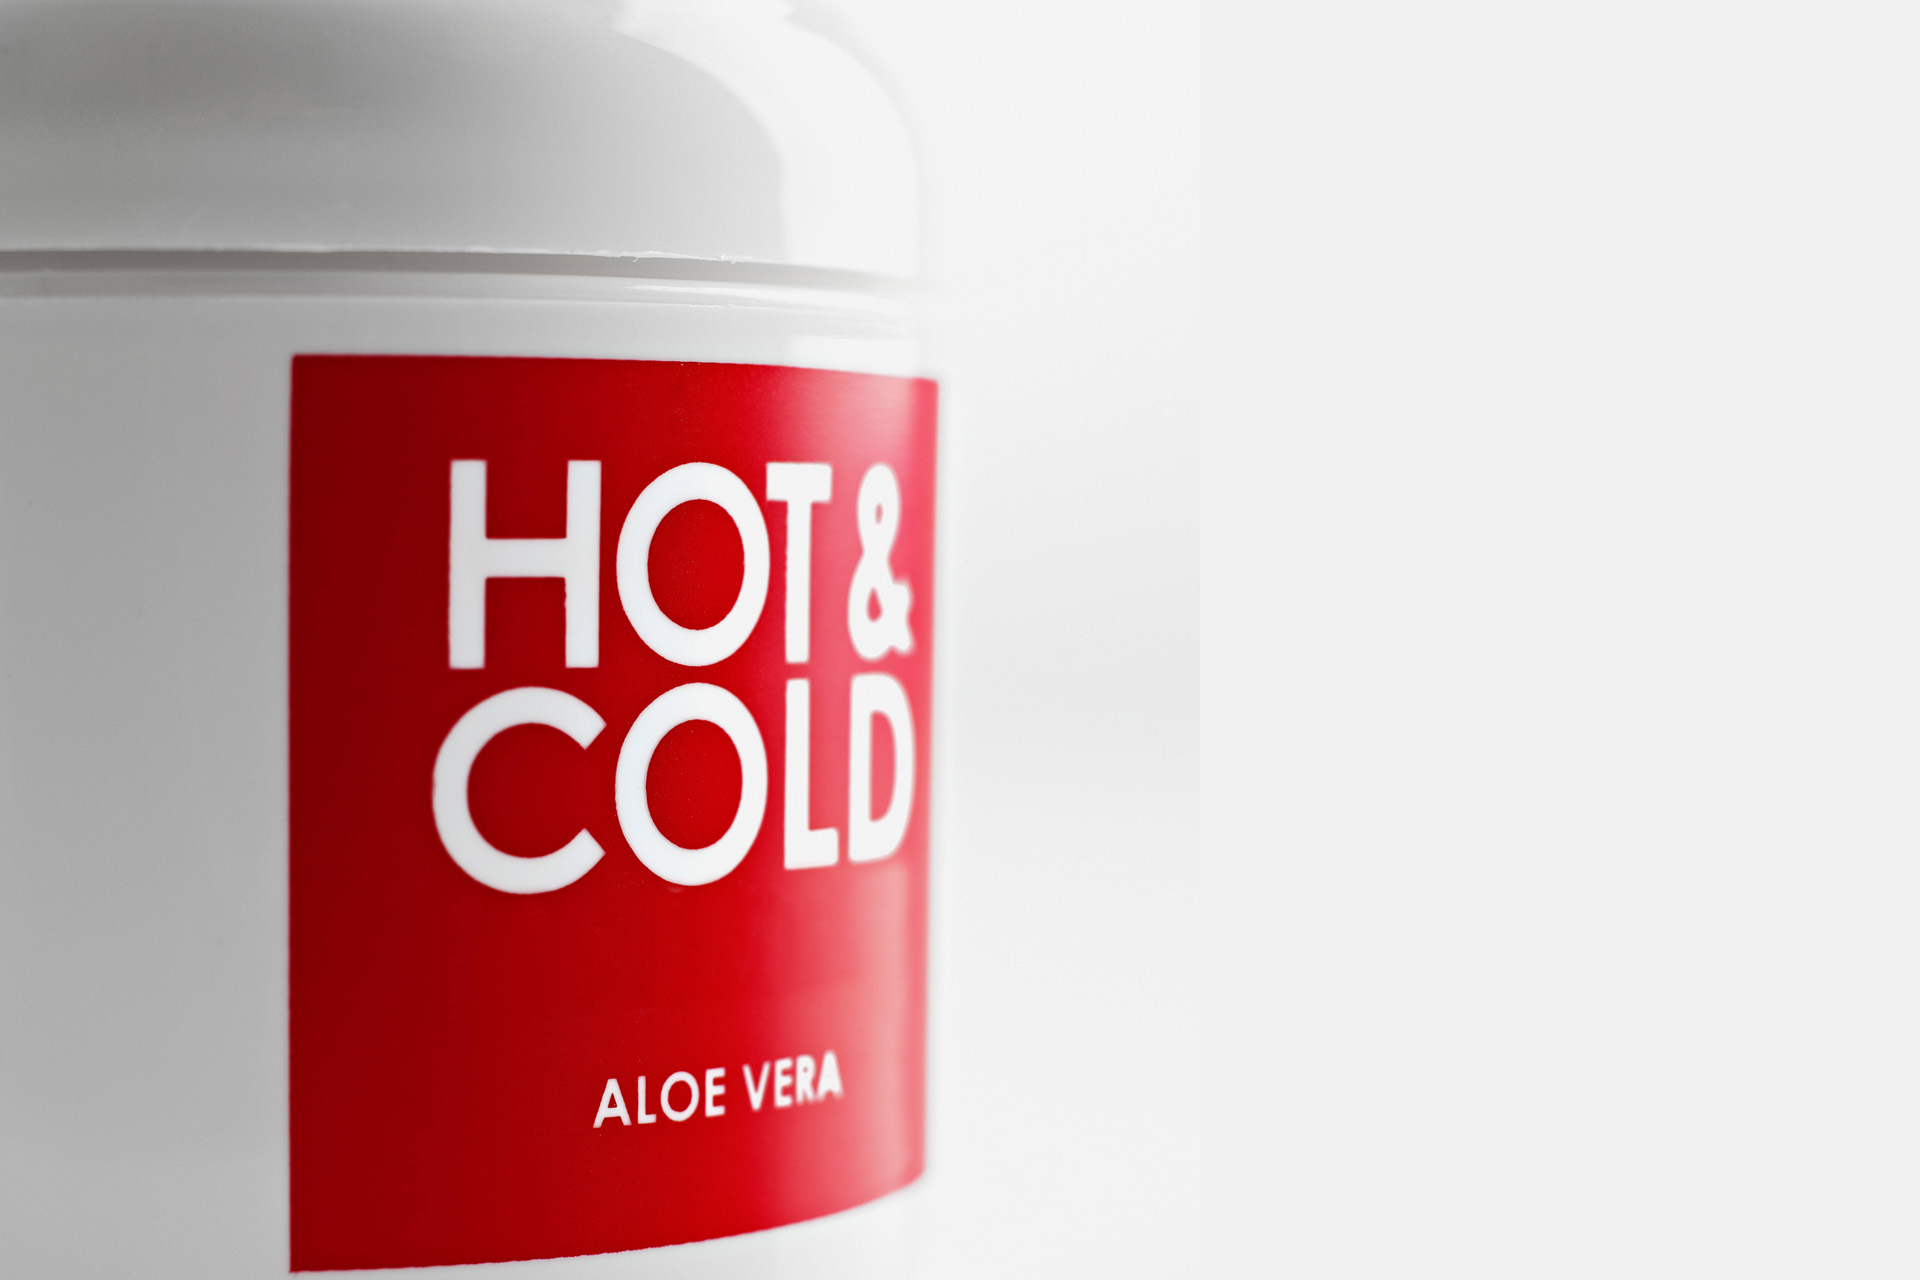 Hot & Cold Aloe Vera Liniment